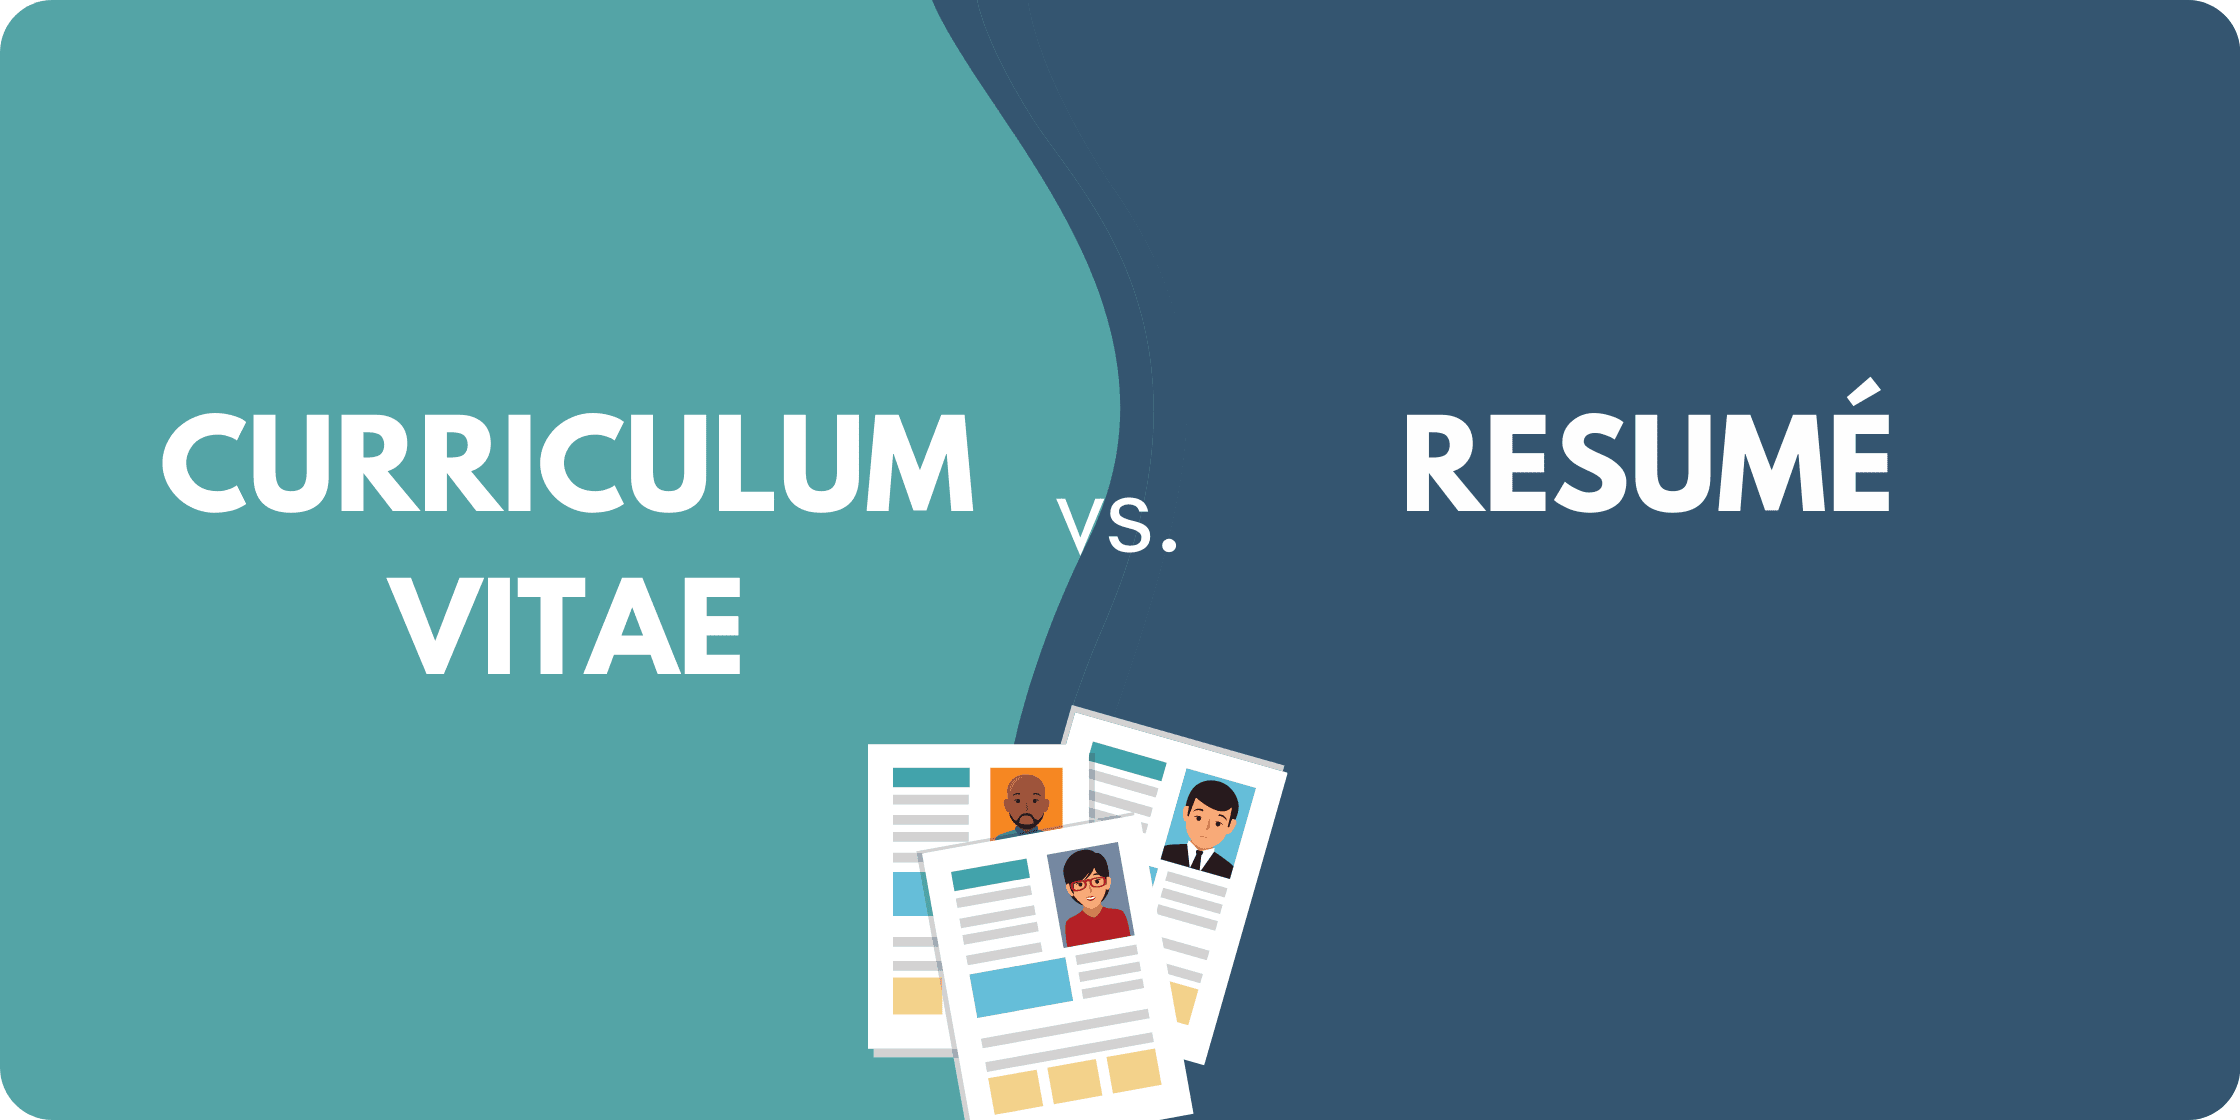 Curriculum vitae vs resume